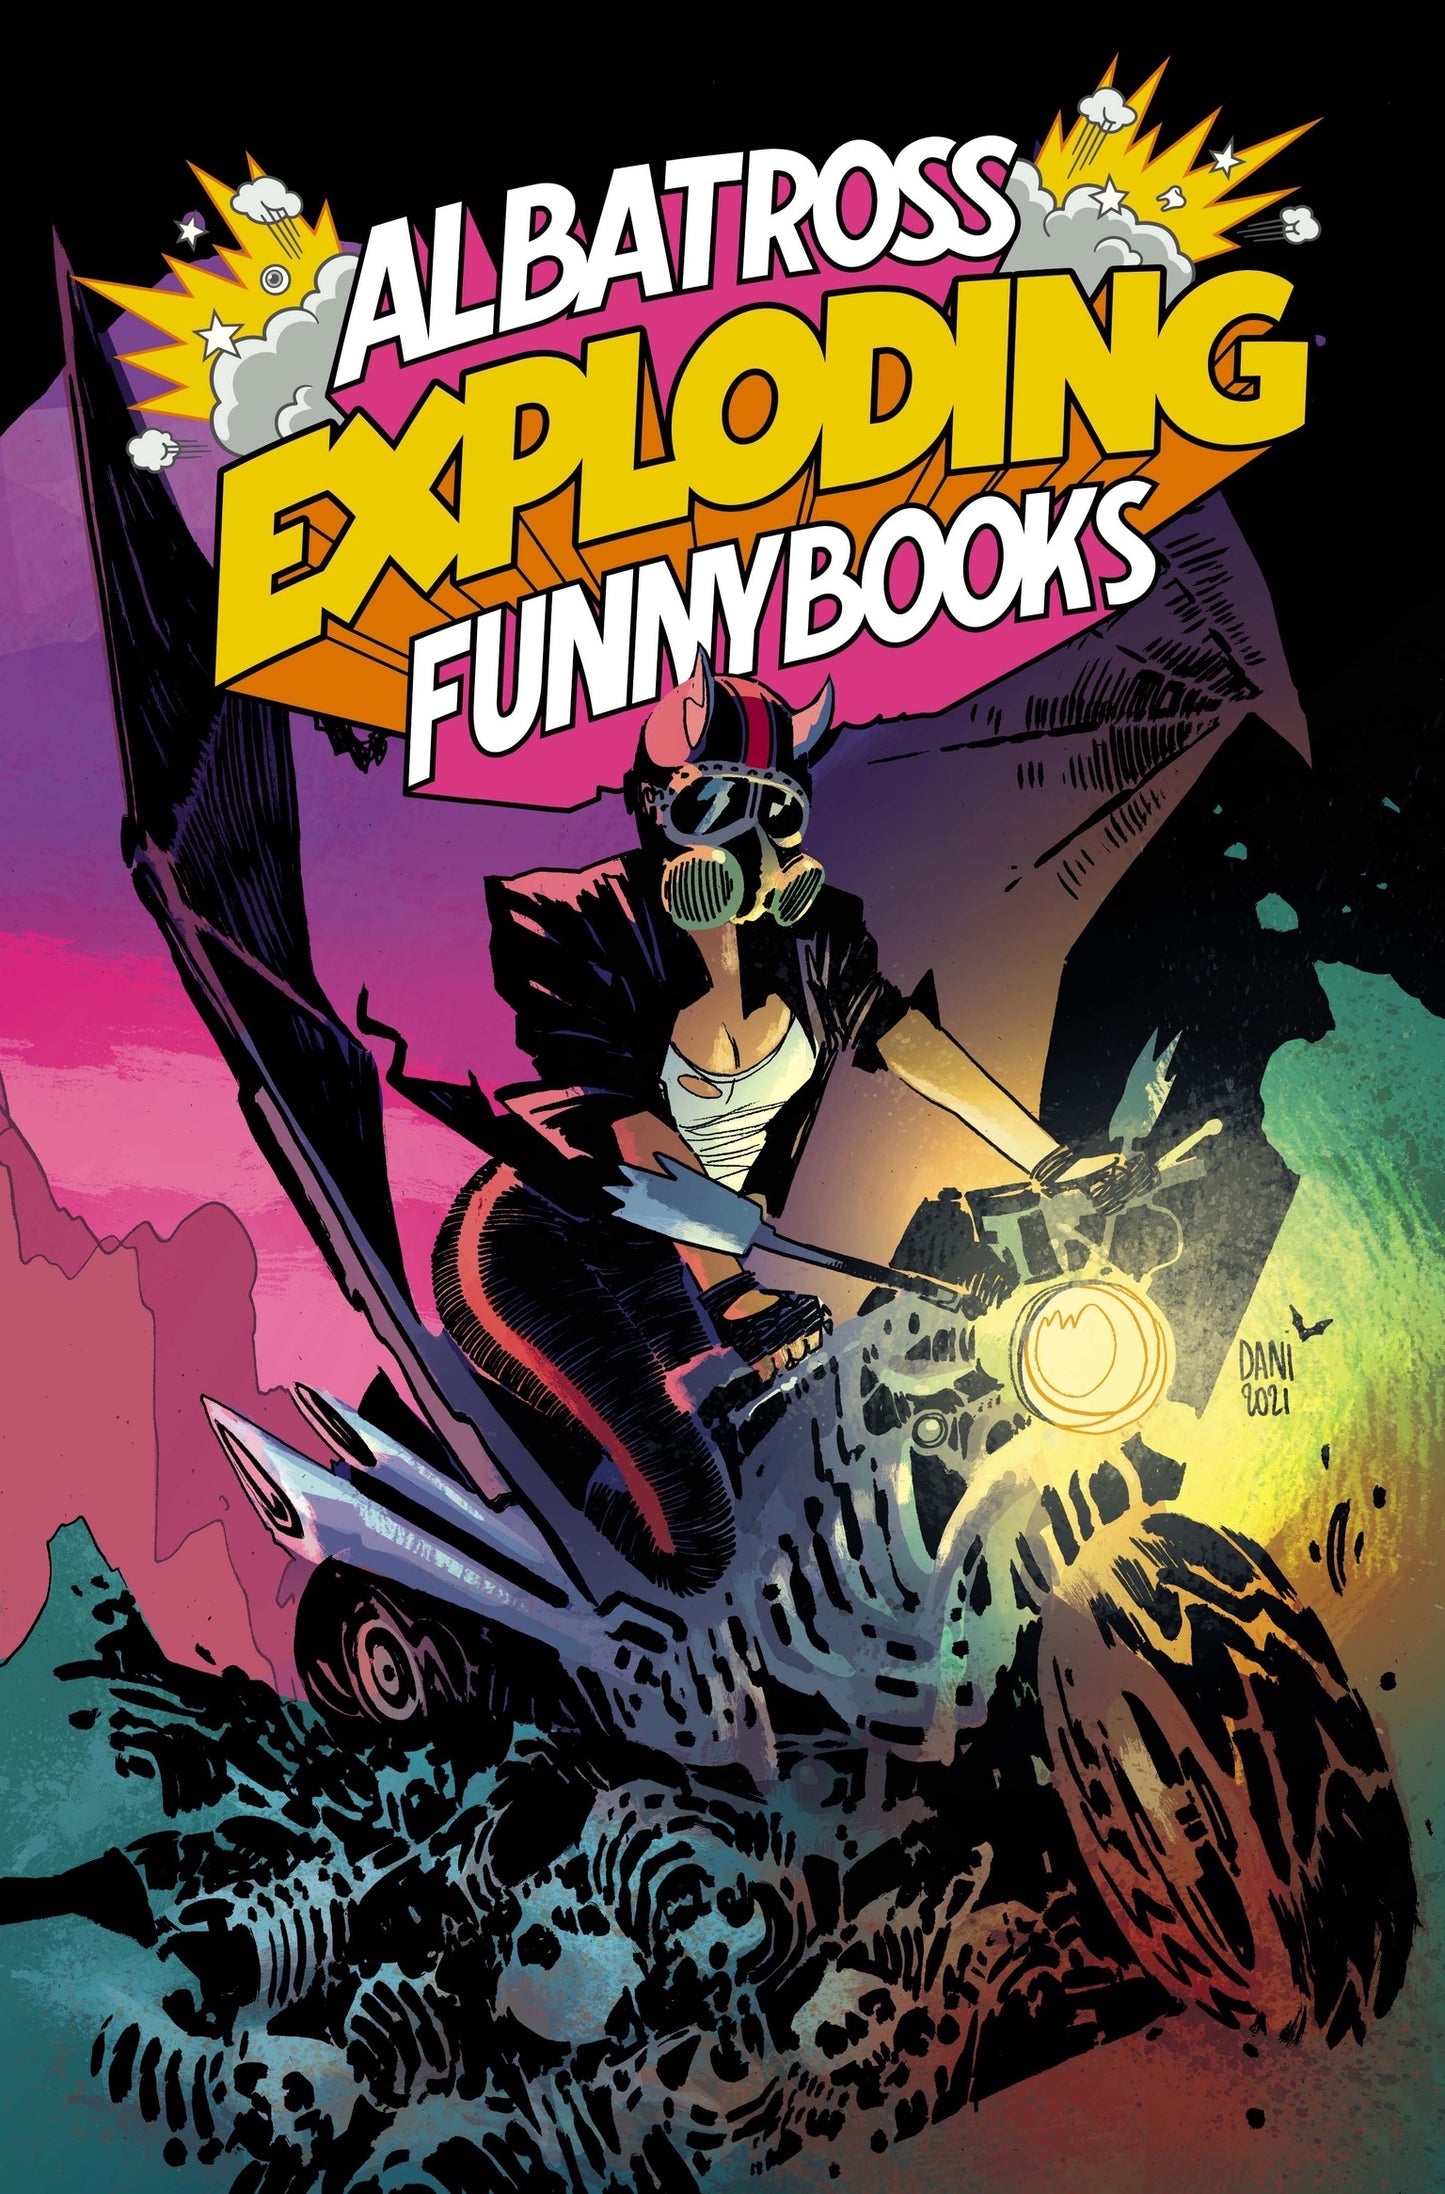 Albatross Exploding Funnybooks #1 CVR B- Dani Strips